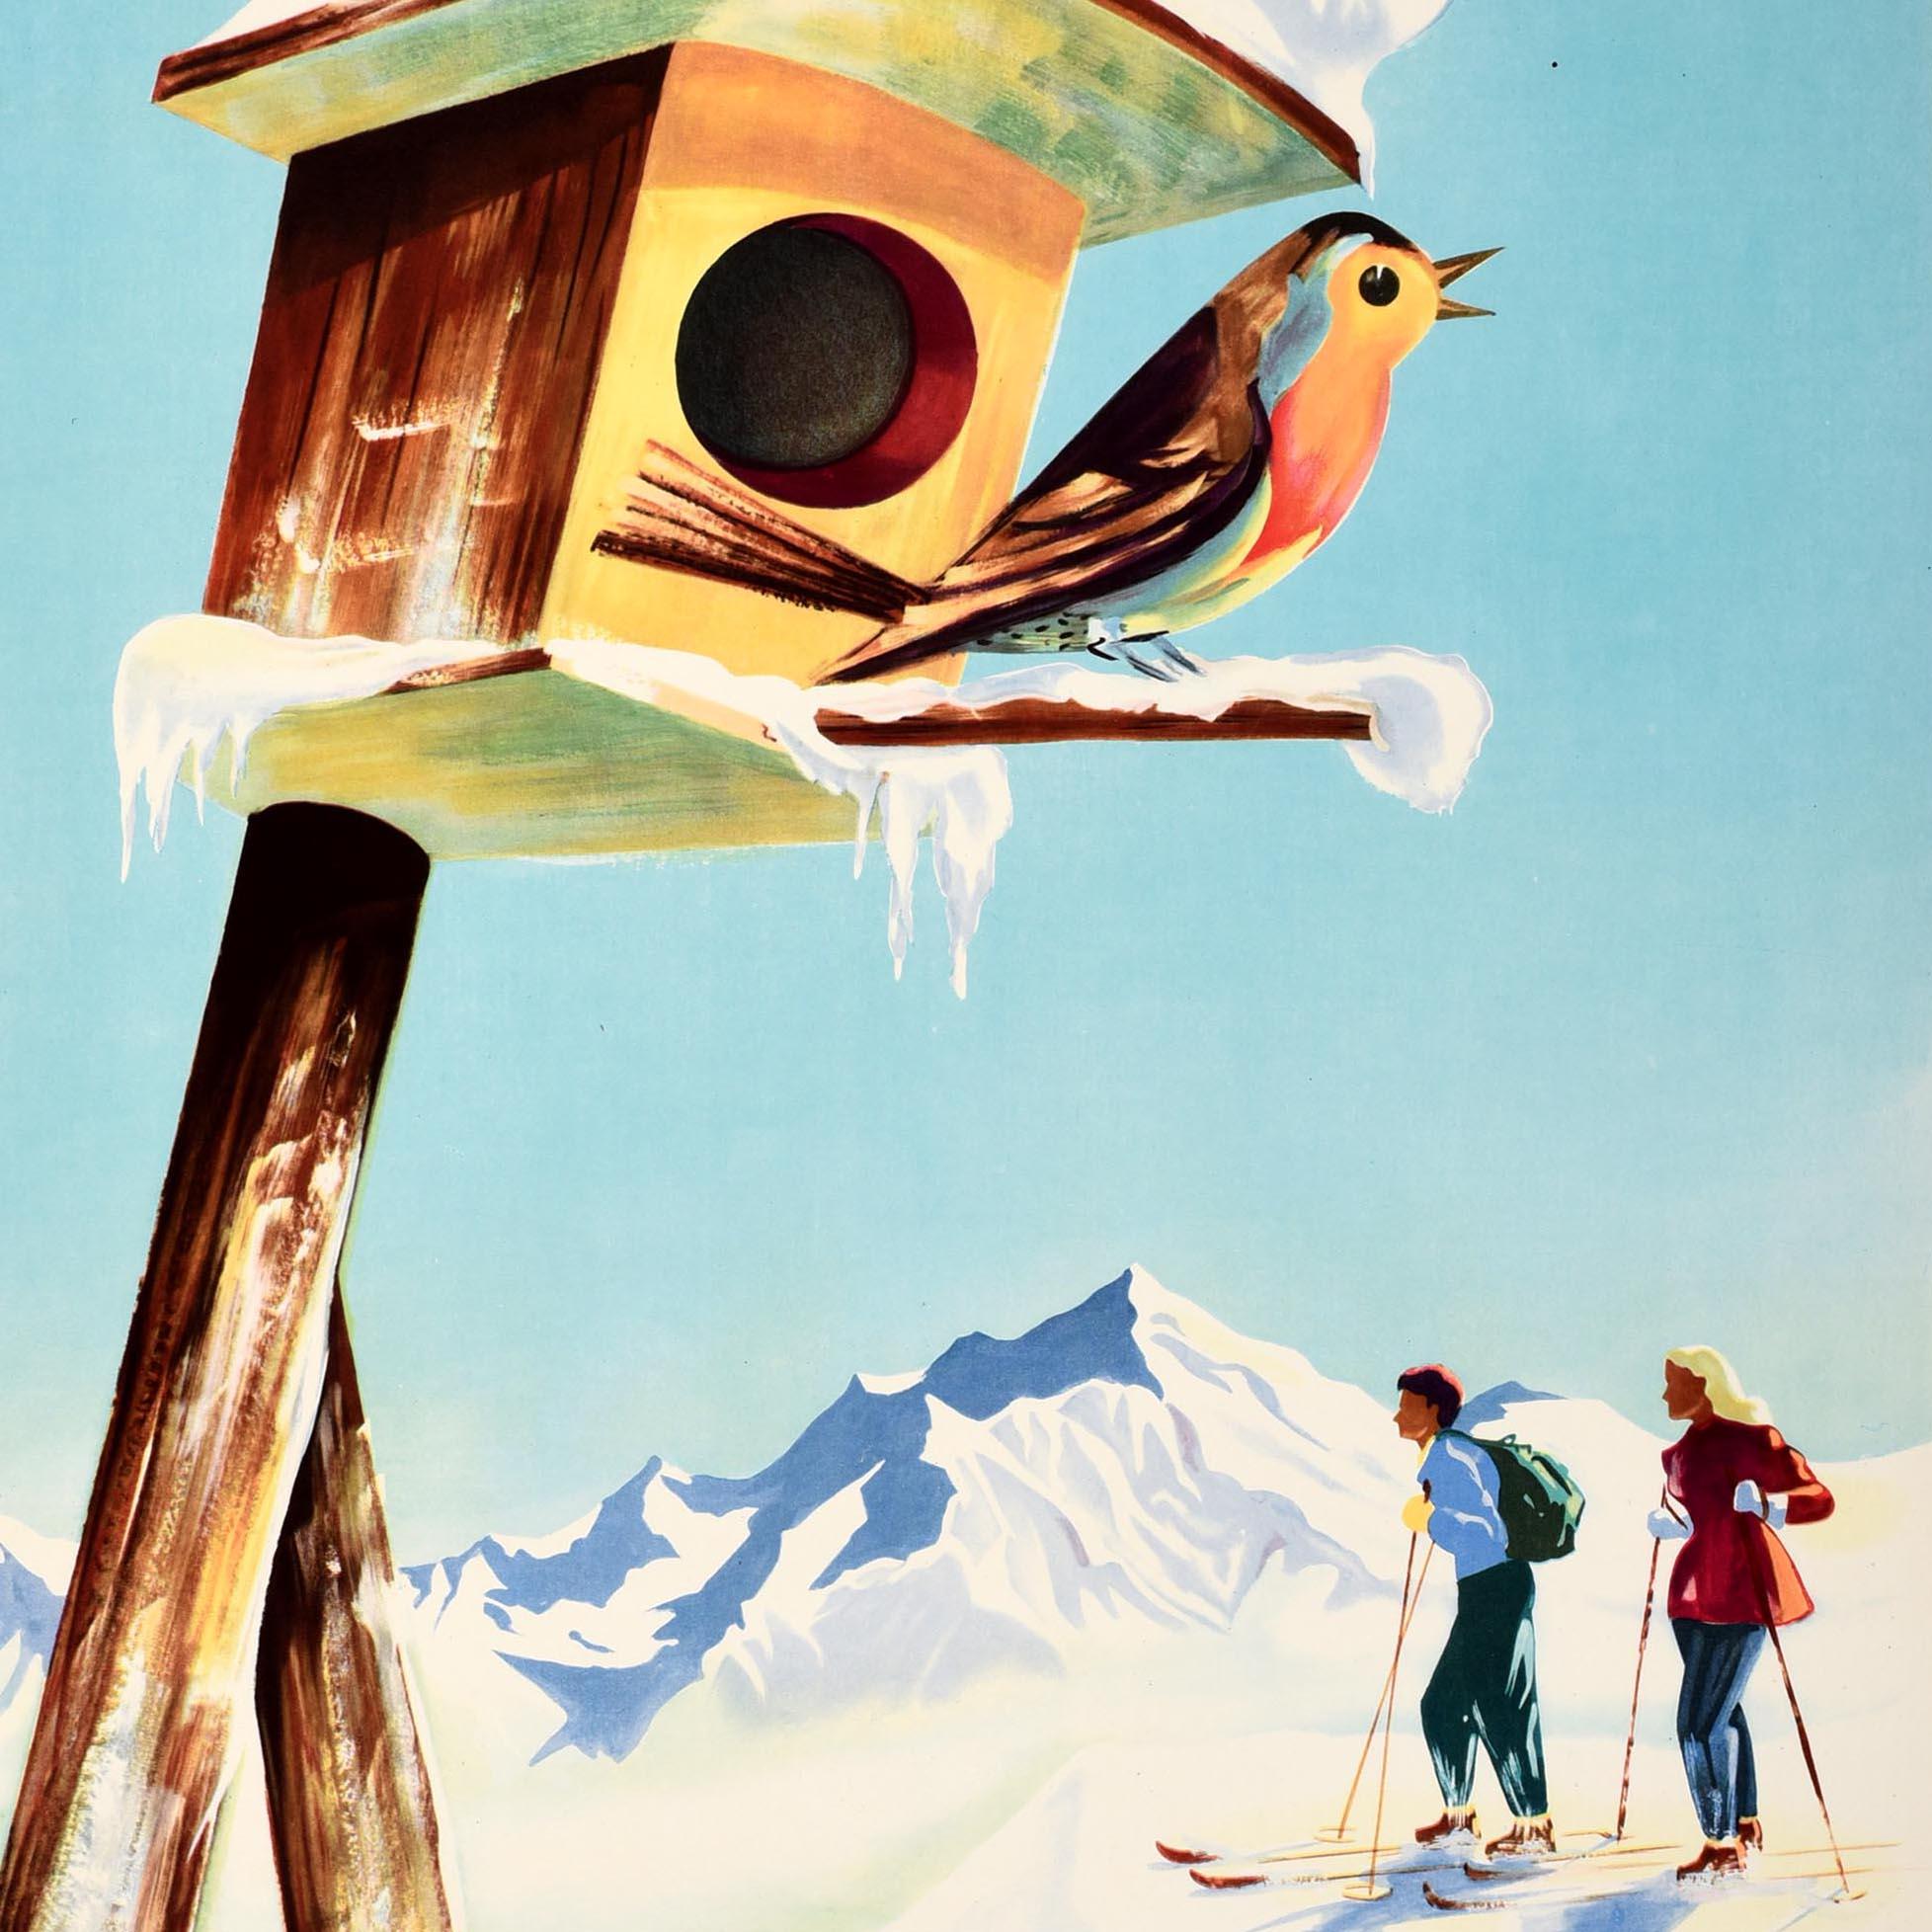 Original Vintage-Skiplakat Werbung Wintersport in Frankreich / Wintersport in Frankreich - mit einem großen Design zeigt ein Paar auf Skiern genießen den Blick auf die verschneiten Berge unter dem blauen Himmel Hintergrund, ein Rotkehlchen Rotbrust